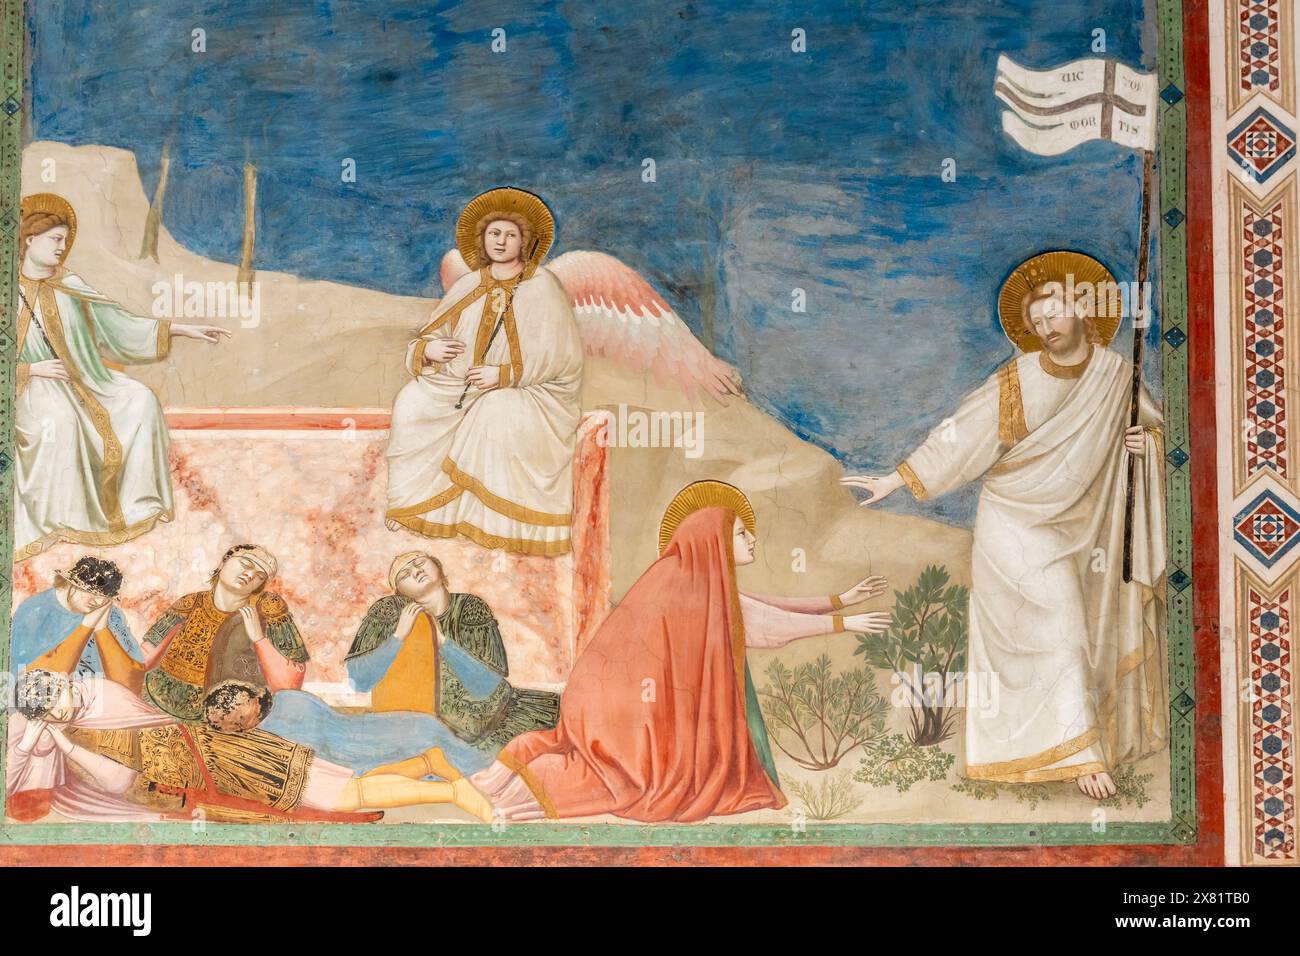 Detail des mittelalterlichen religiösen Freskos, das Engel zeigt, wie Jesus eine weiße Flagge mit einem Kreuz hält, während die Jungfrau Maria für ihn beansprucht Stockfoto